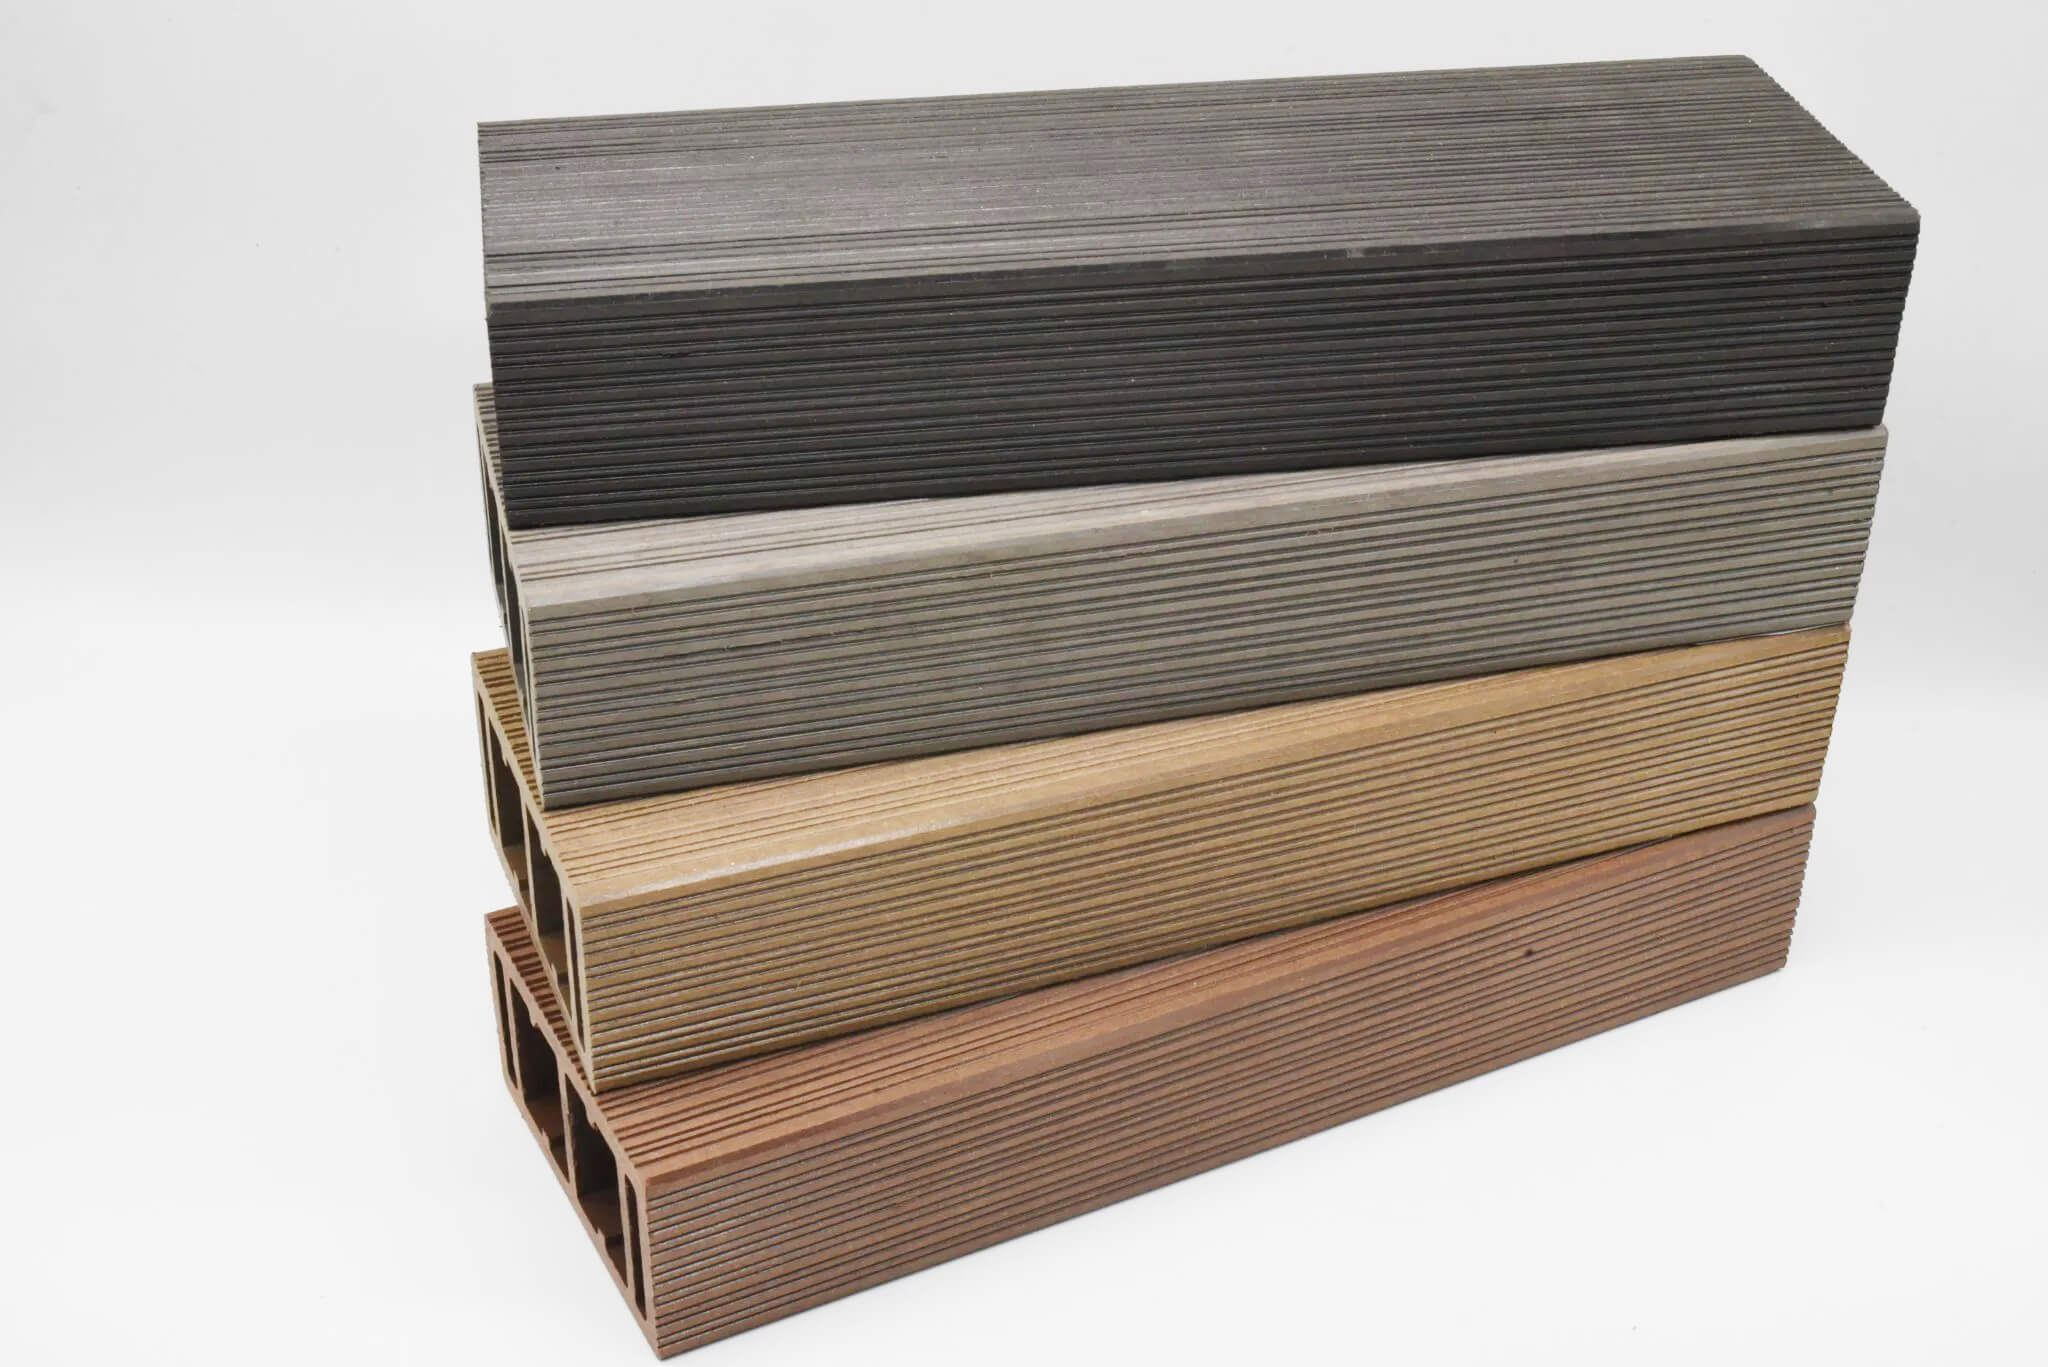 Thanh lam gỗ nhựa Hoàng Phát 50 x 100mm có 4 màu